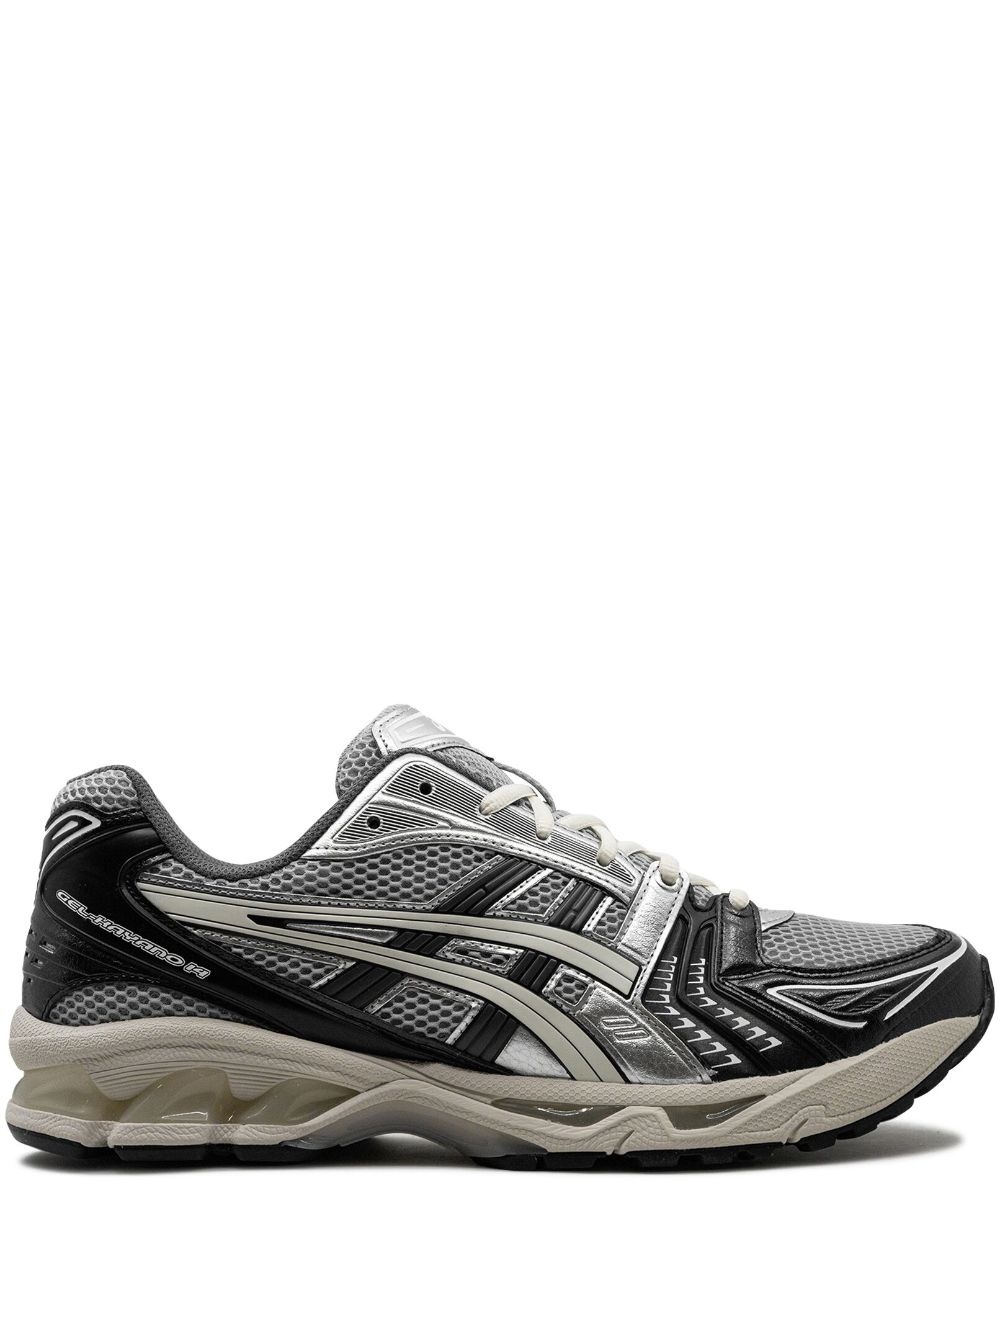 GEL-KAYANO 14 "Black/Glacier Grey Silver" sneakers - 1